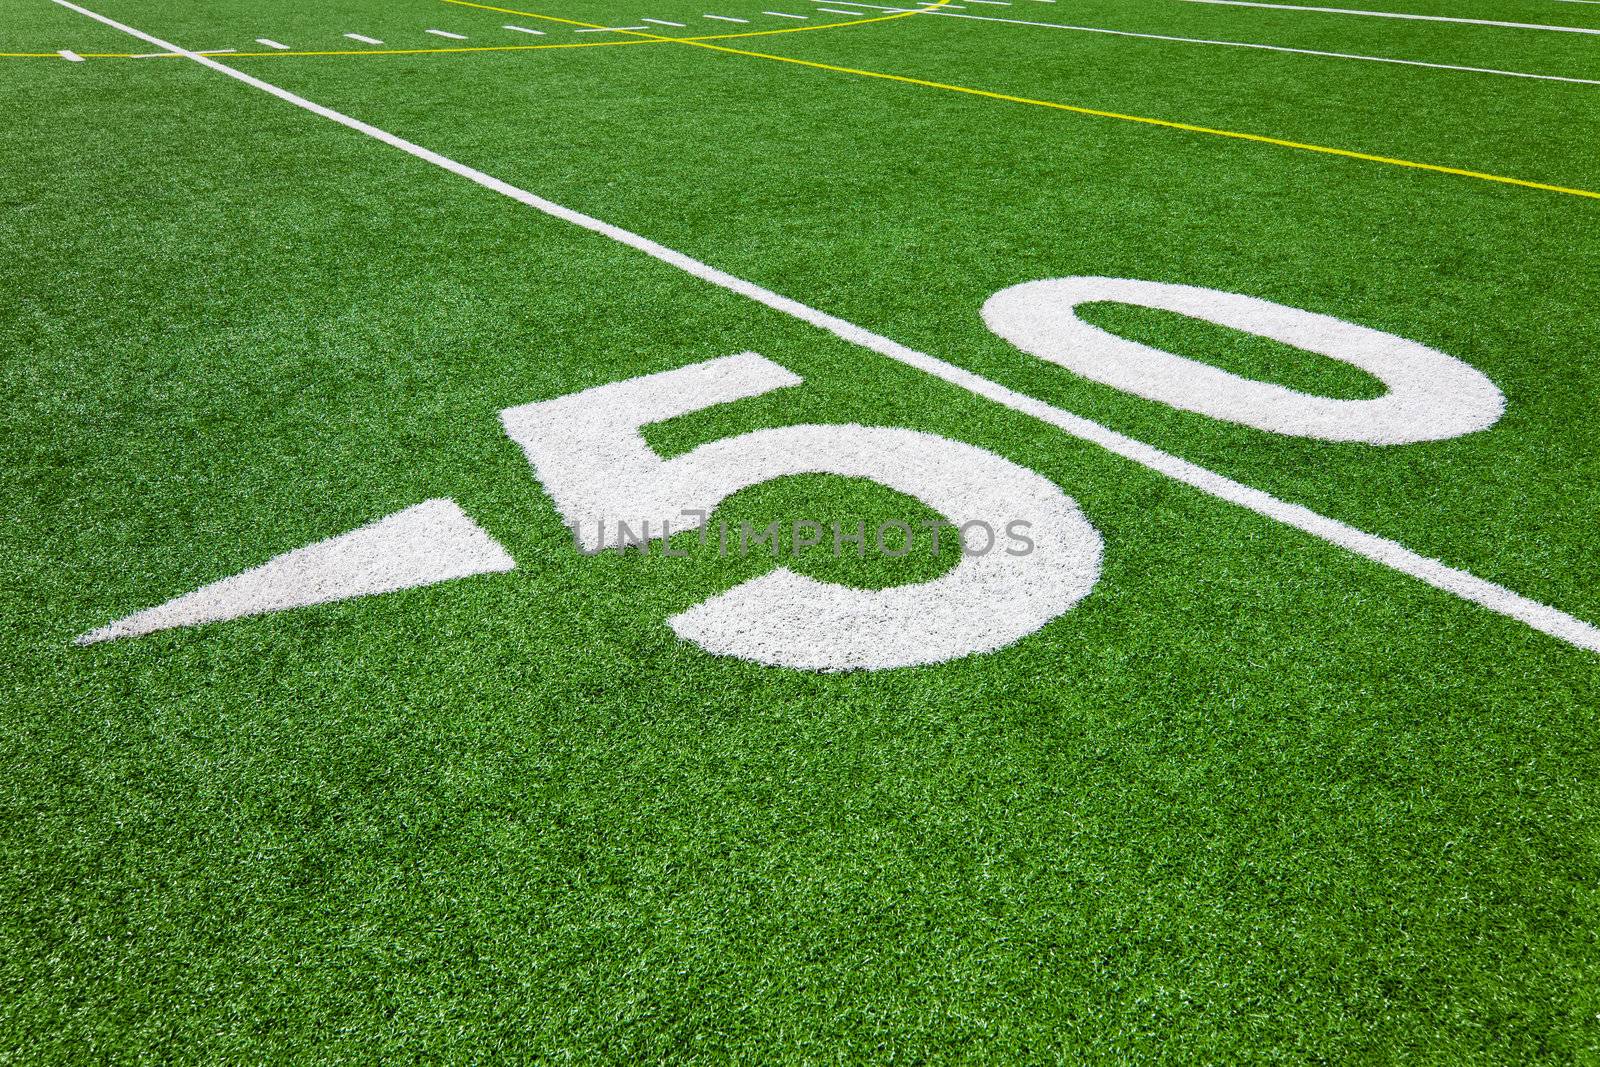 fifty yard line - football field
 by aetb